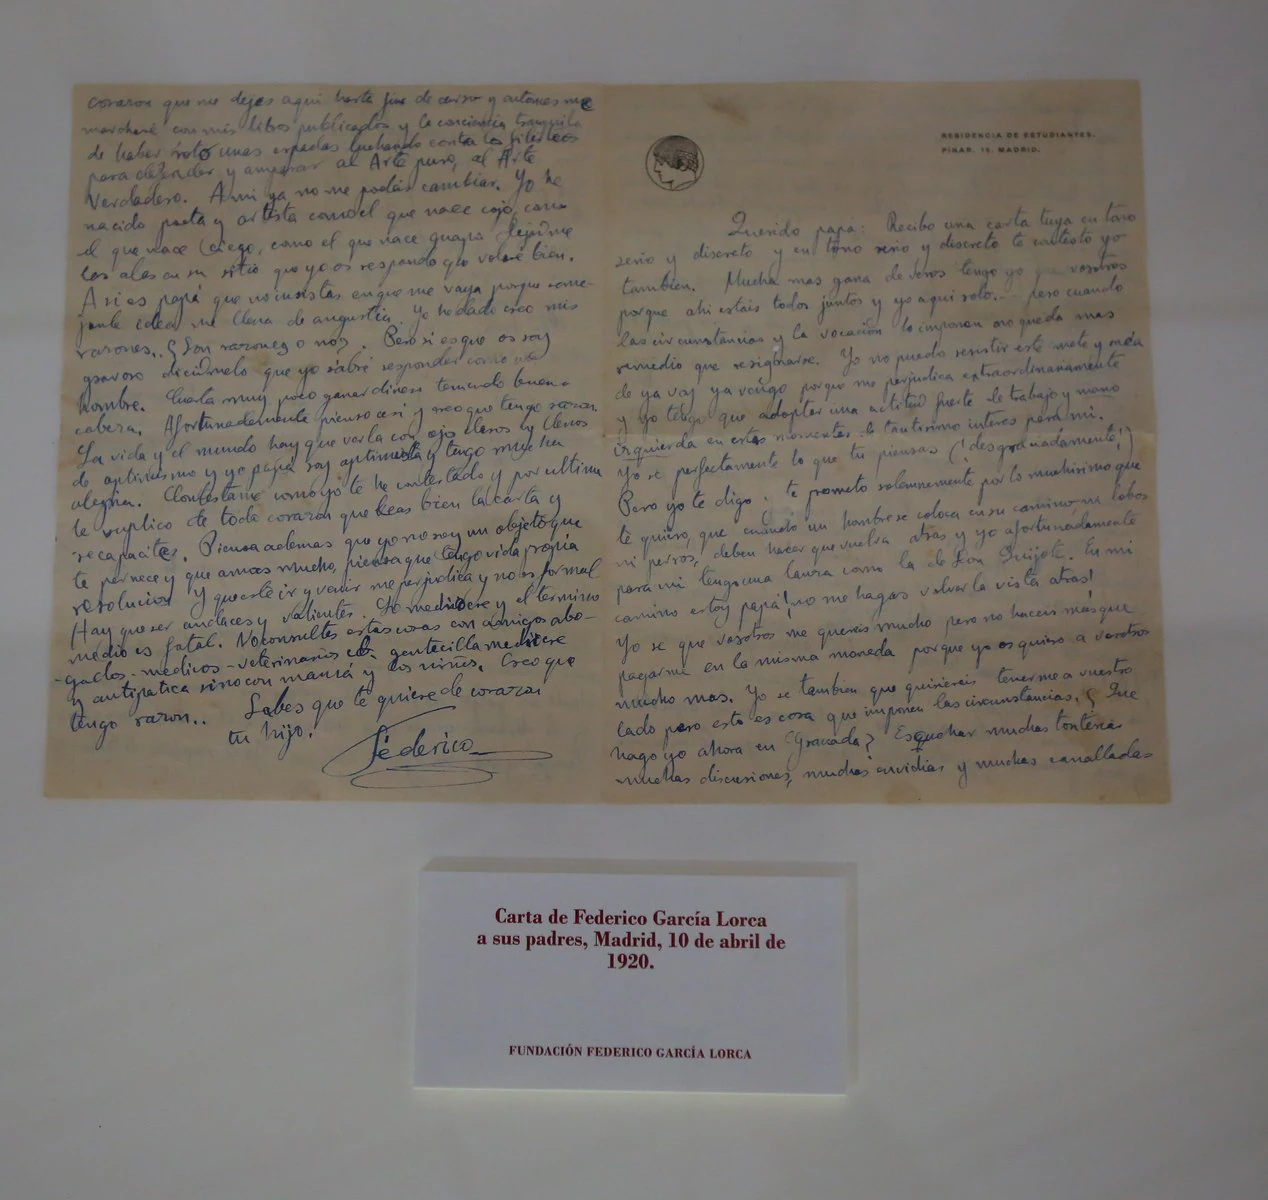 Carta de Federico García Lorca a sus padres enviada desde Madrid el 10 de abril de 1920, apenas unos meses después de su ingreso en la Residencia de Estudiantes. En ella da cuenta de sus avances en Madrid. Fundación Lorca.